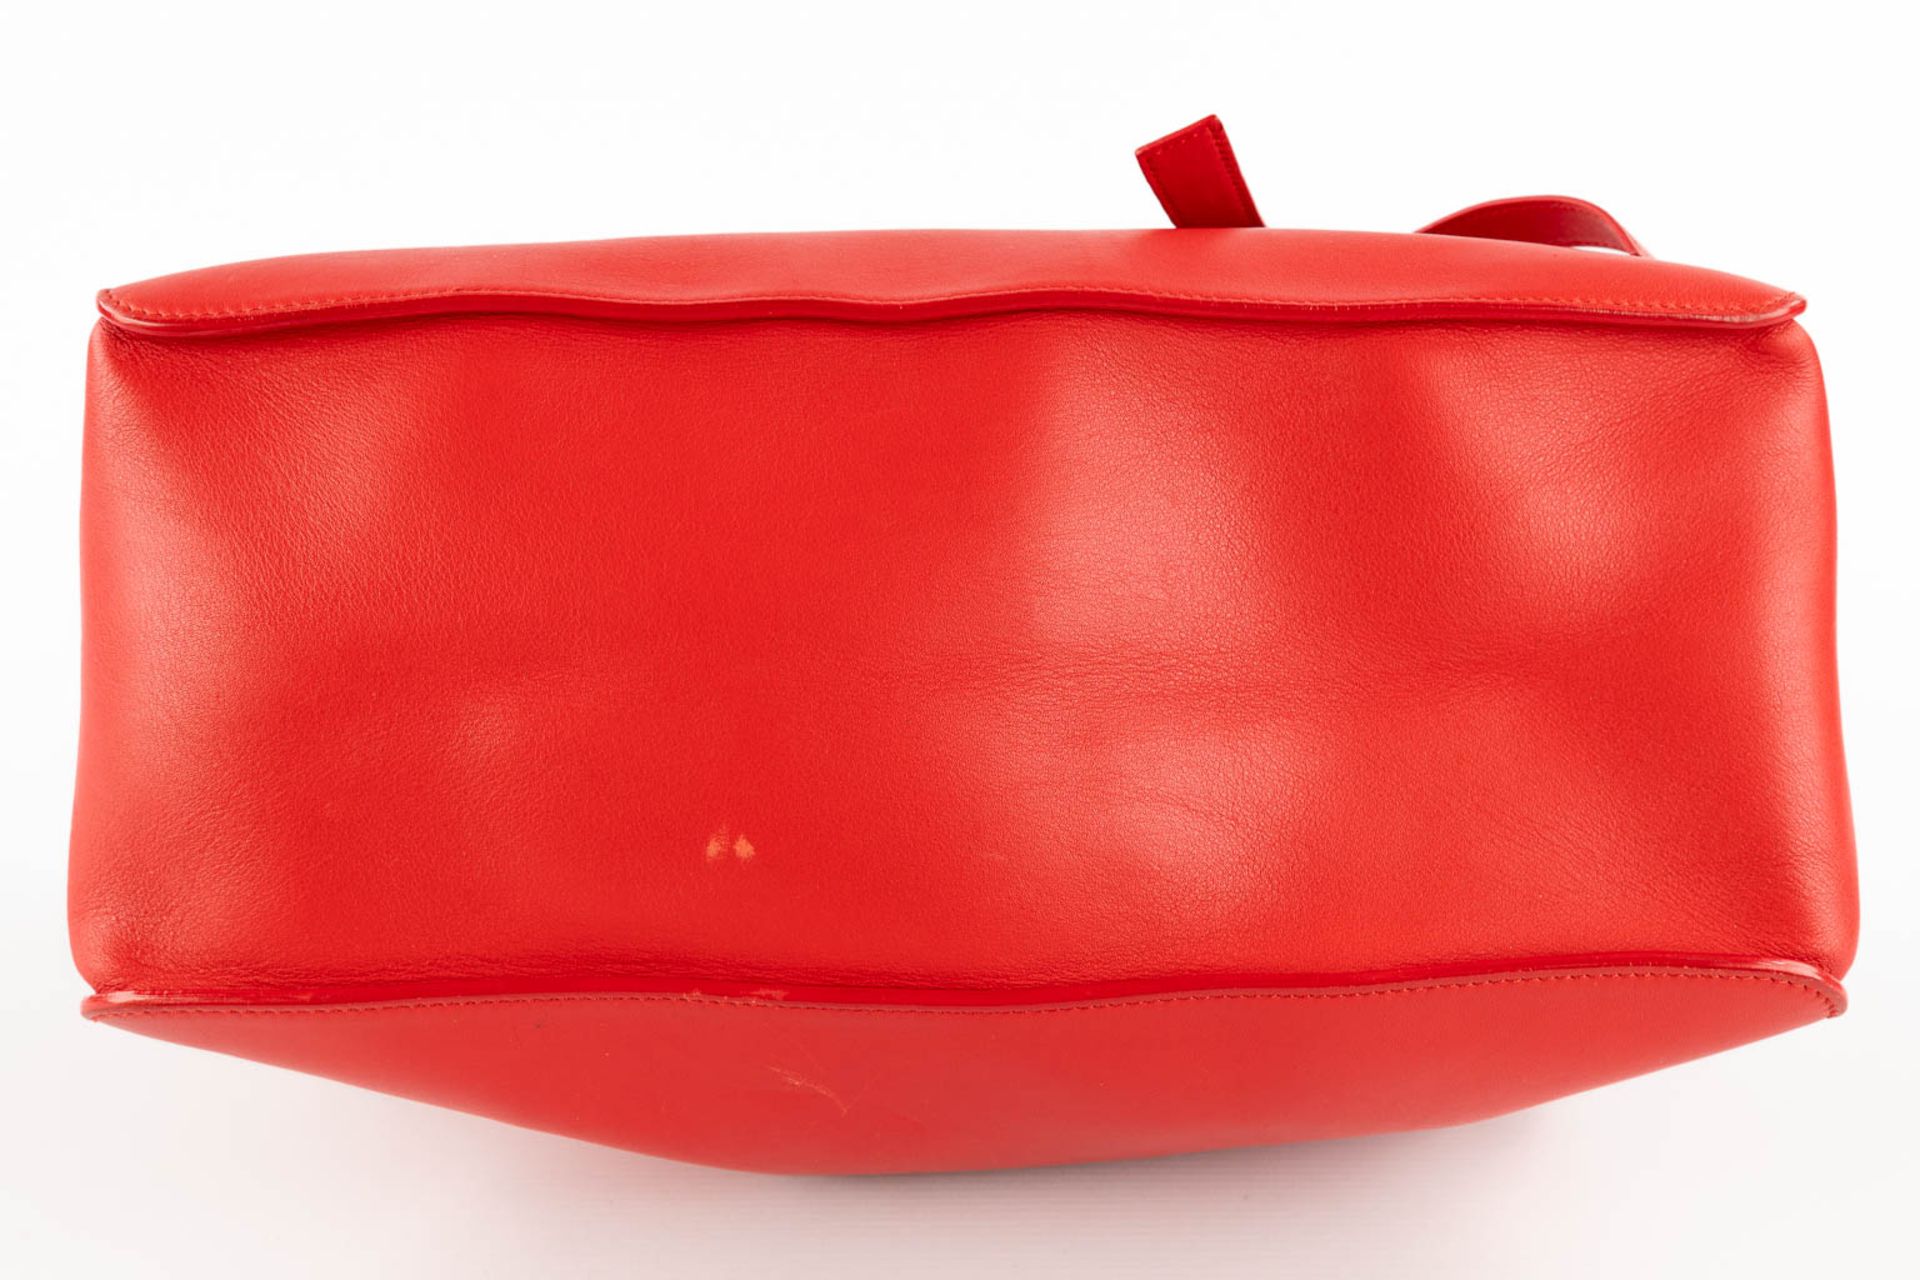 Escada, a handbag made of red leather. (W:33 x H:28 cm) - Bild 7 aus 17